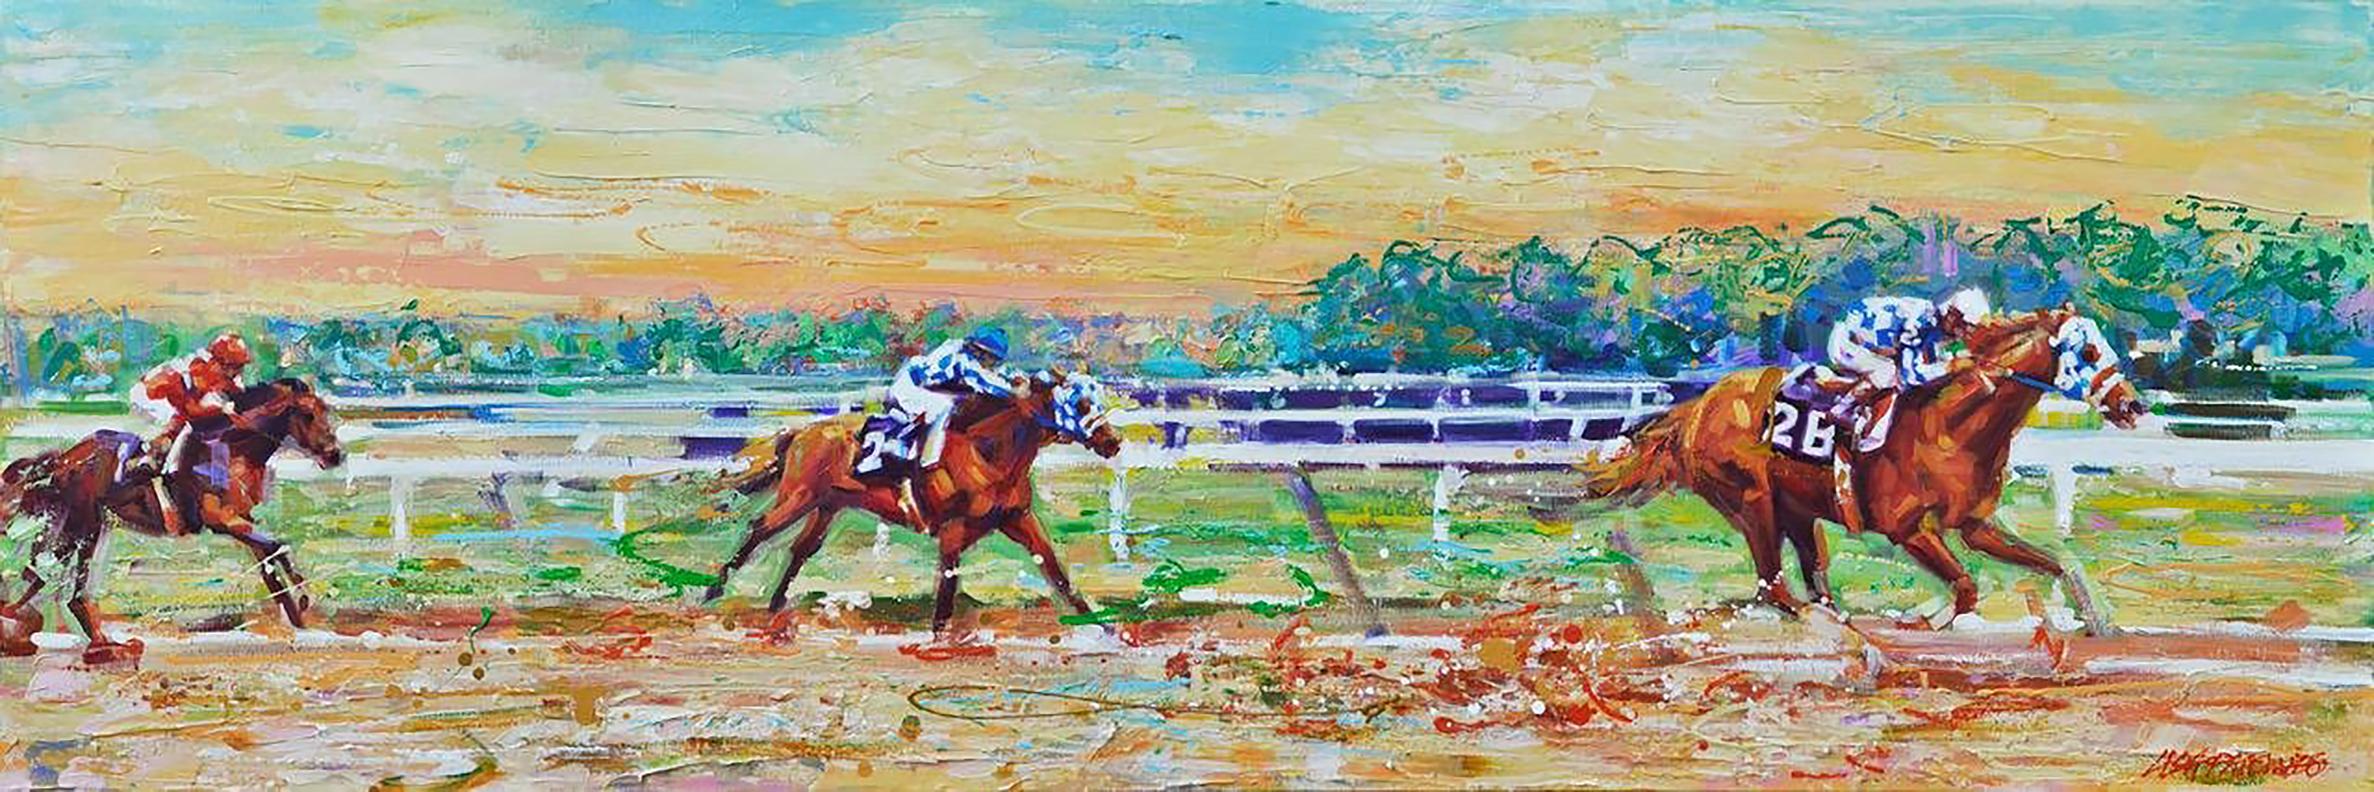 Dieses mutige und farbenfrohe impressionistische Pferdebild "Meadow Stable Mates" der Künstlerin Lisa Palombo ist ein 24x72 Acrylgemälde auf Leinwand. Abgebildet ist die Rennlegende Secretariat in seiner kupferfarbenen Pracht beim Marlboro